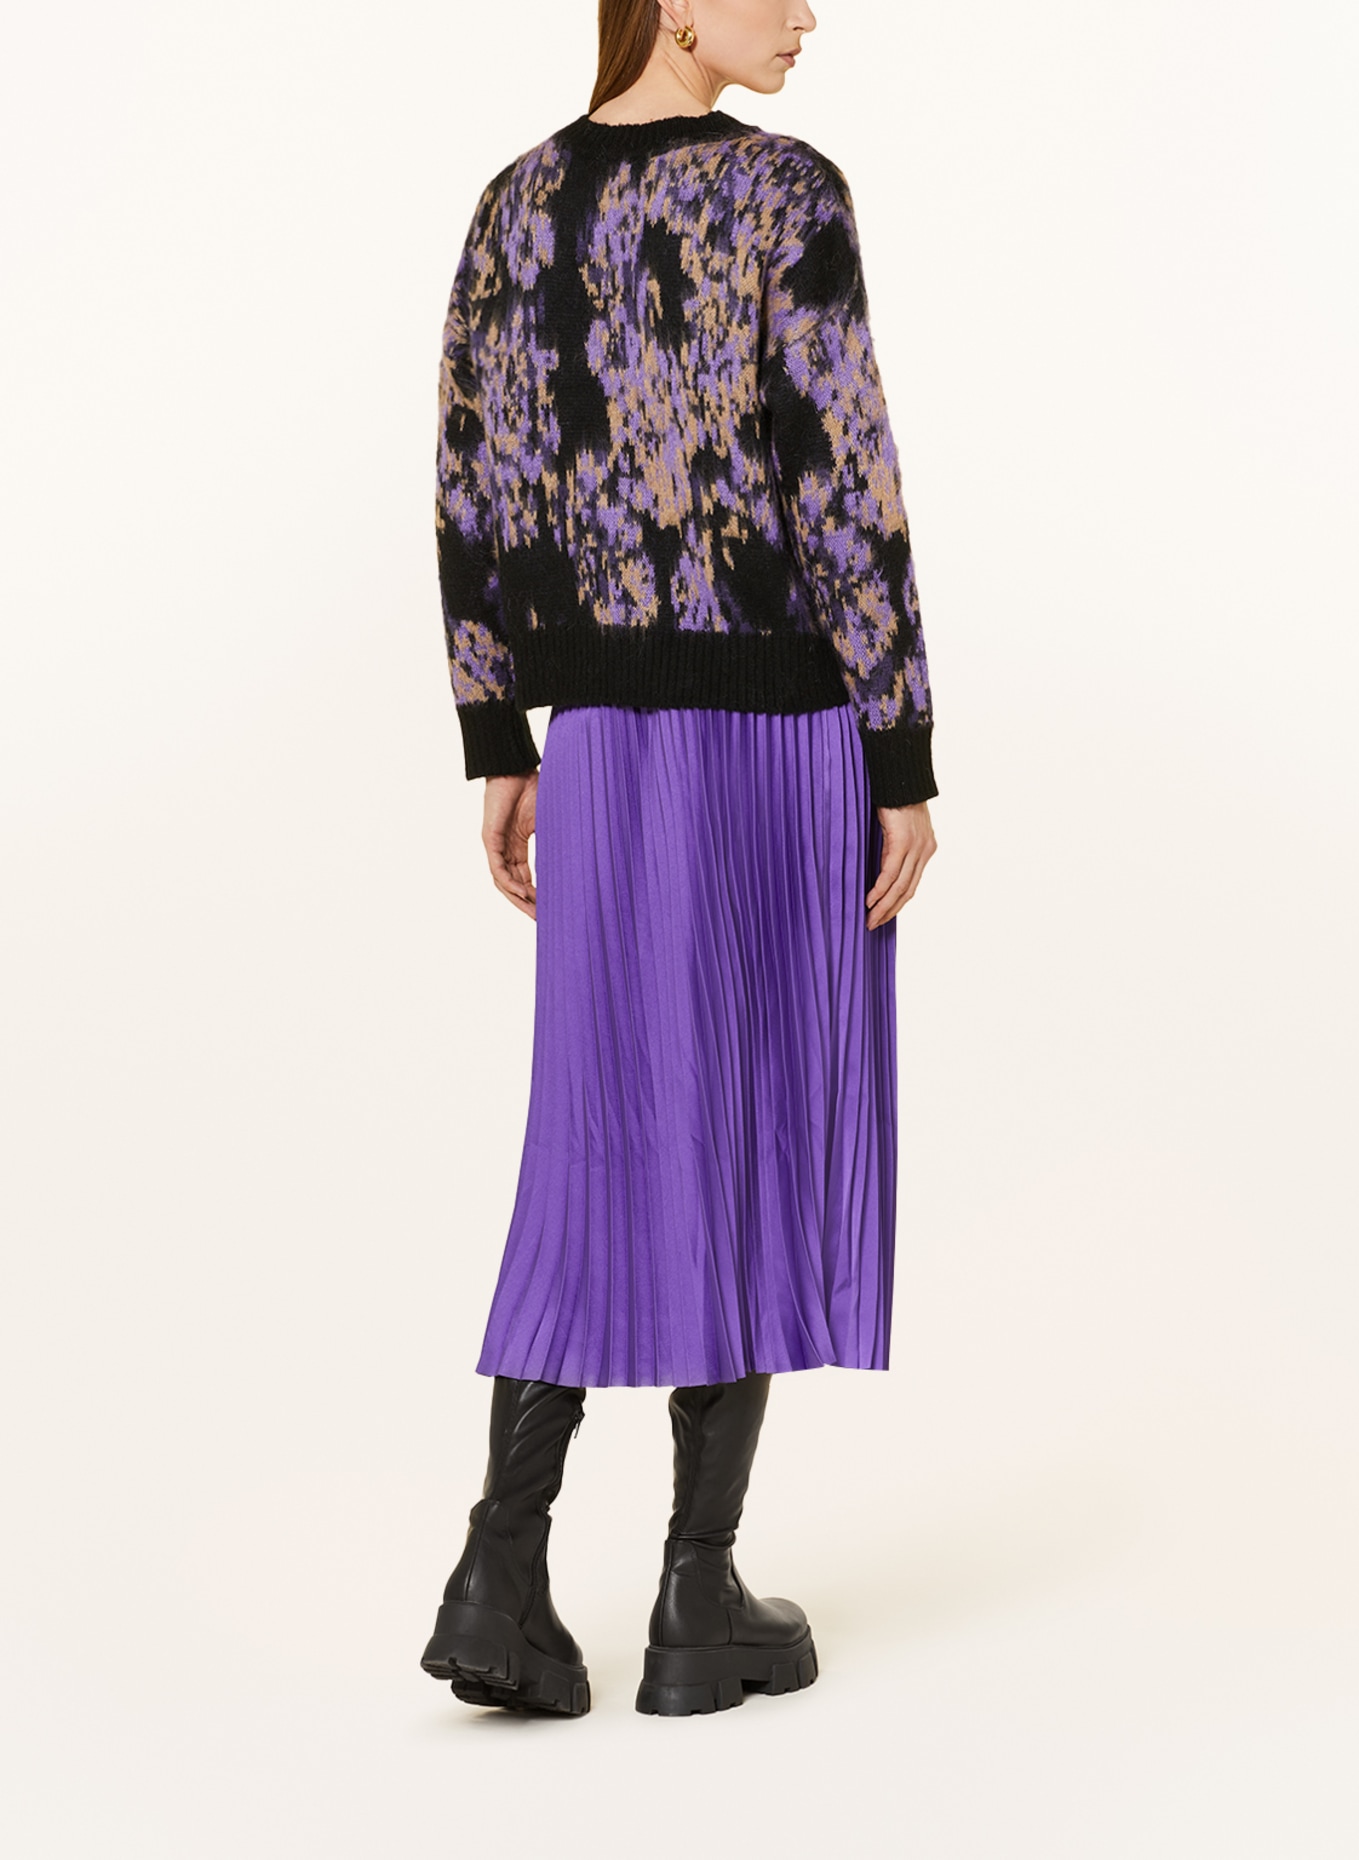 CATNOIR Sweater, Color: LIGHT PURPLE/ BLACK/ BEIGE (Image 3)